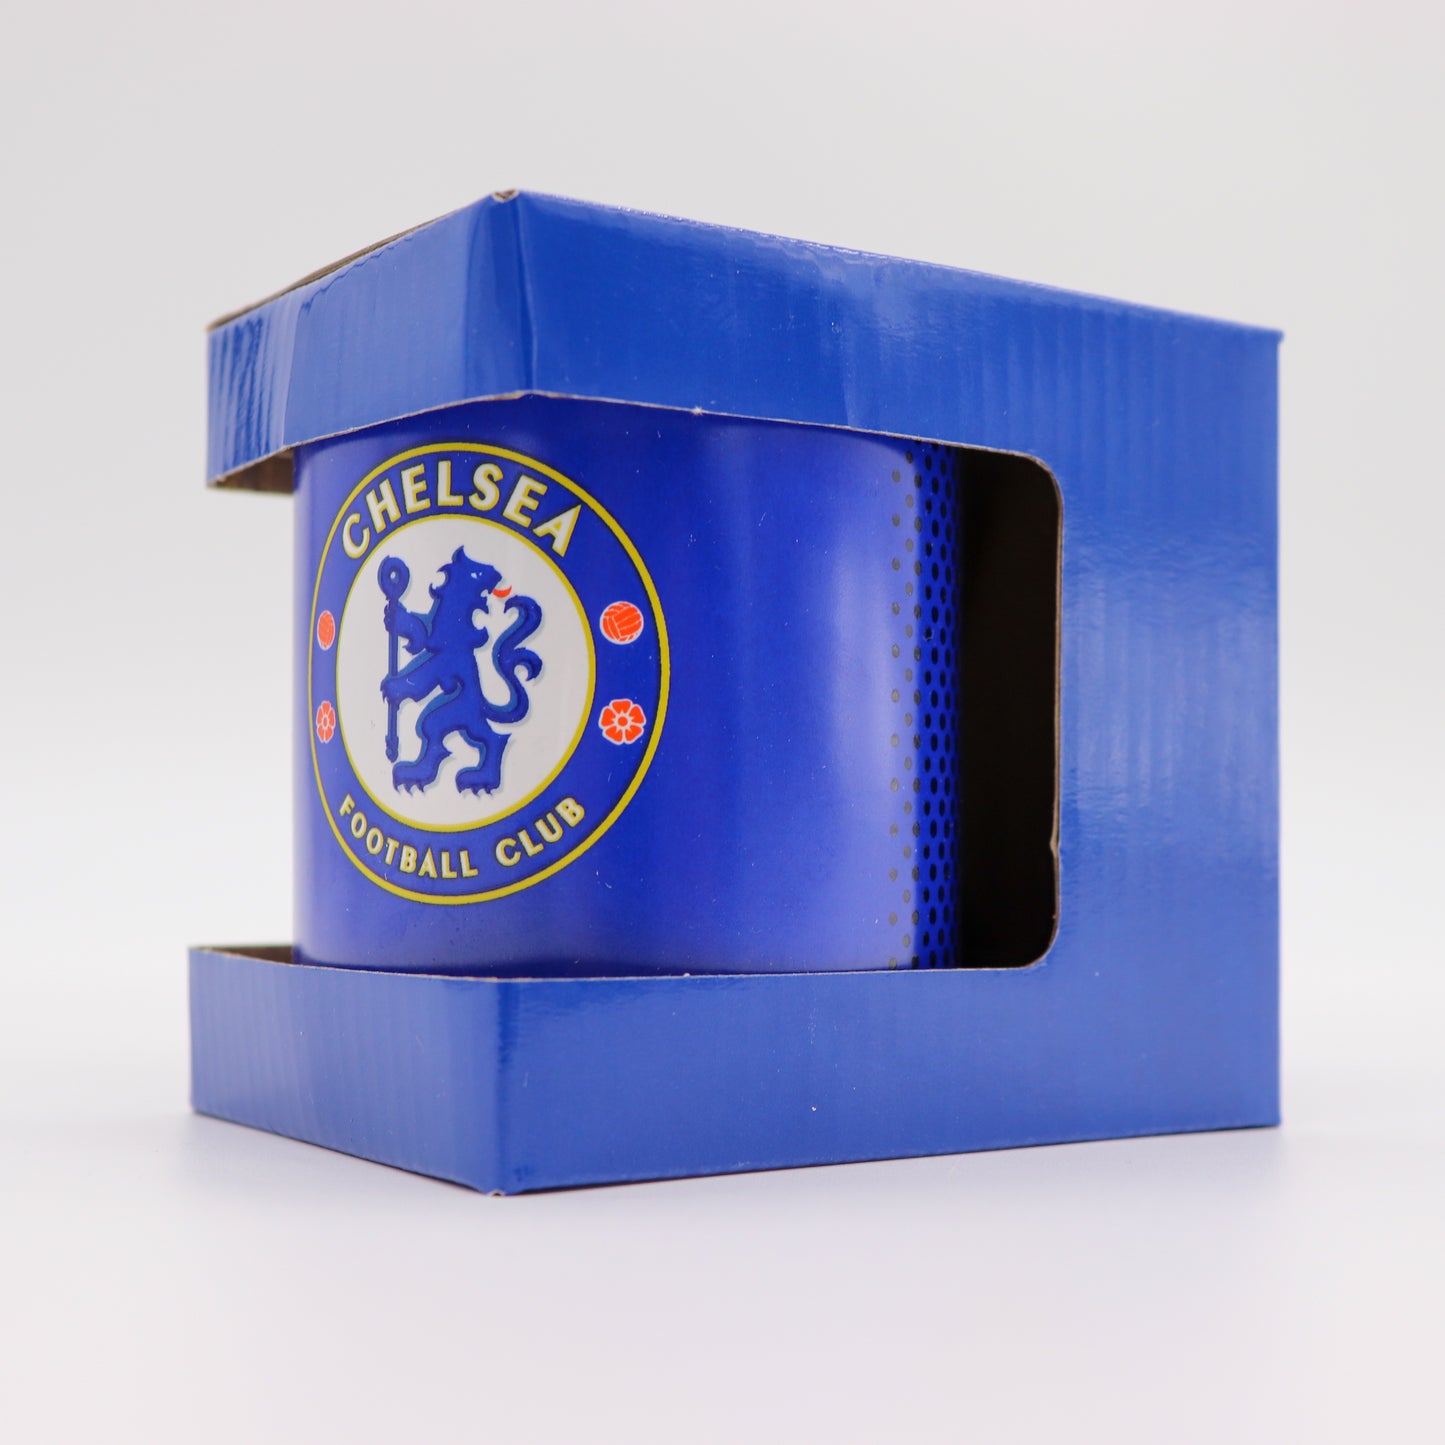 Chelsea Football Club Premium Souvenir Coffee Mug, New